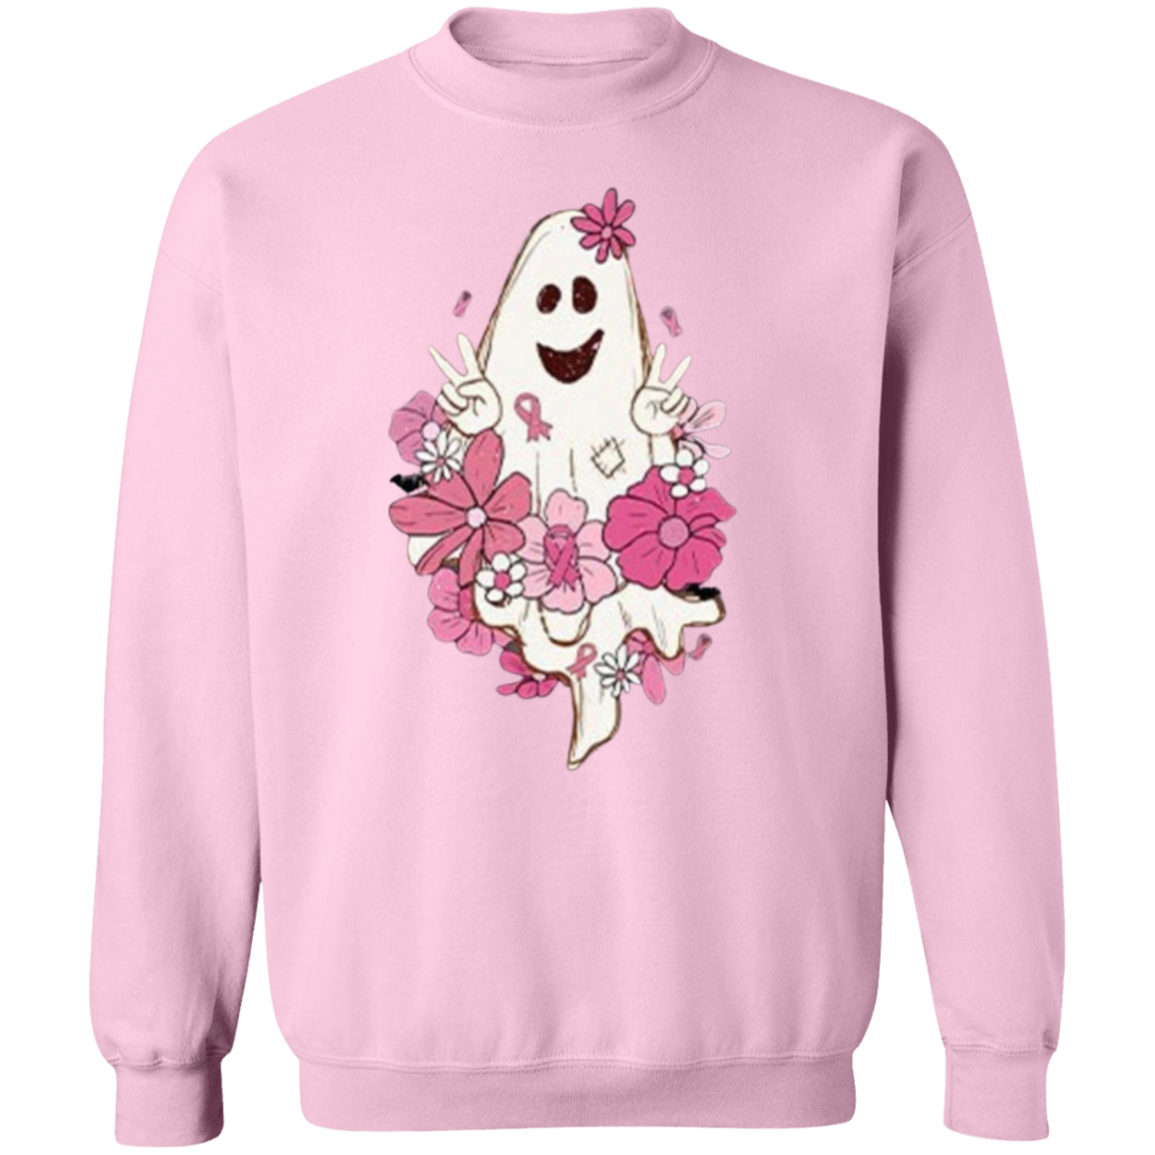 Halloween Breast Cancer Sweatshirt